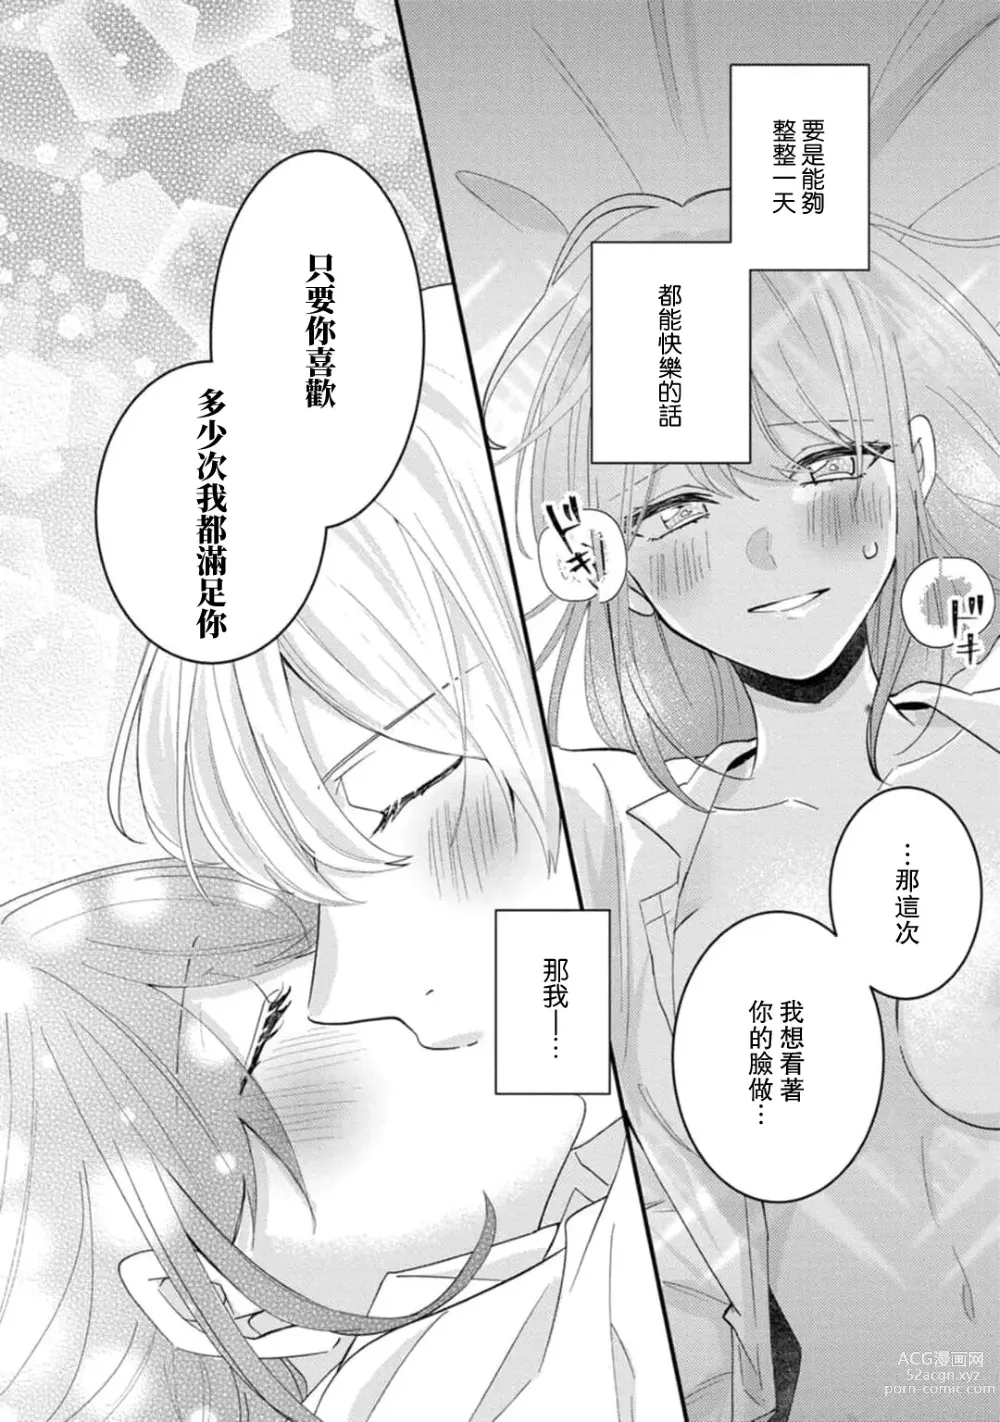 Page 161 of manga 冷酷绅士的性癖只对我泄露 1-5 end